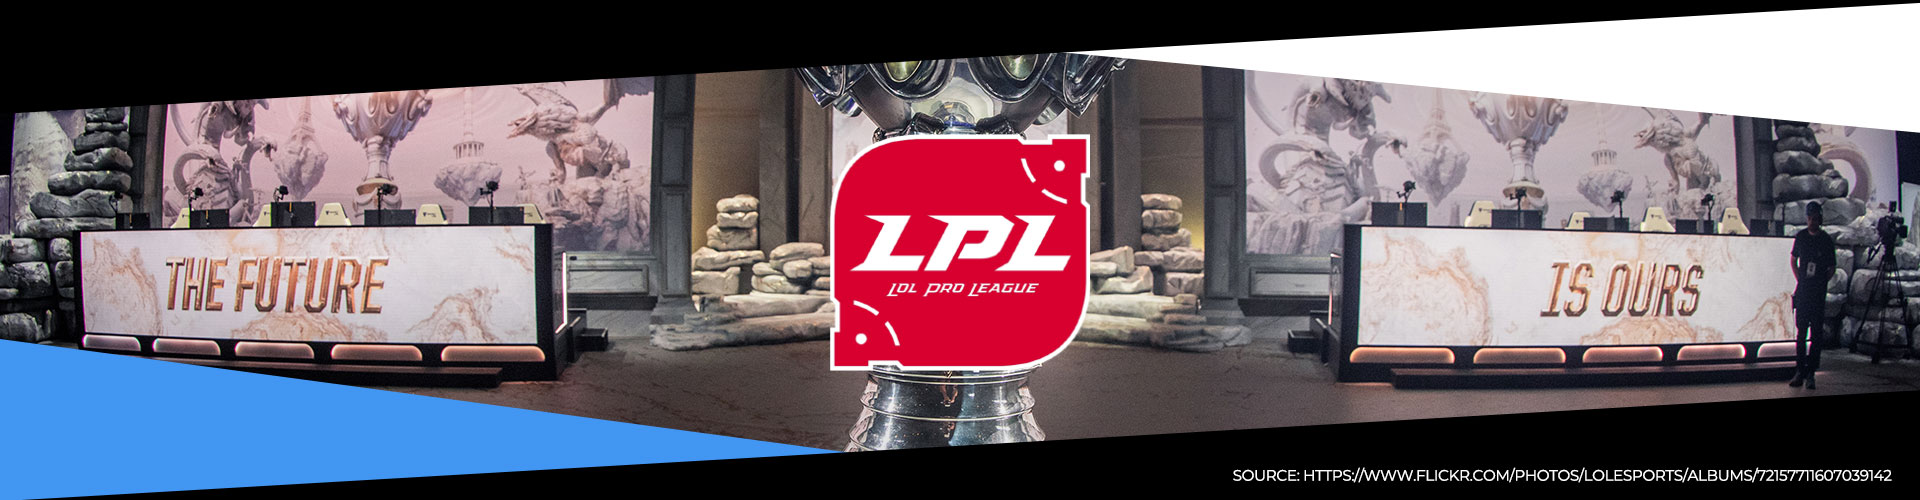 Eventsida för vårsäsongen i den kinesiska LPL-ligan.